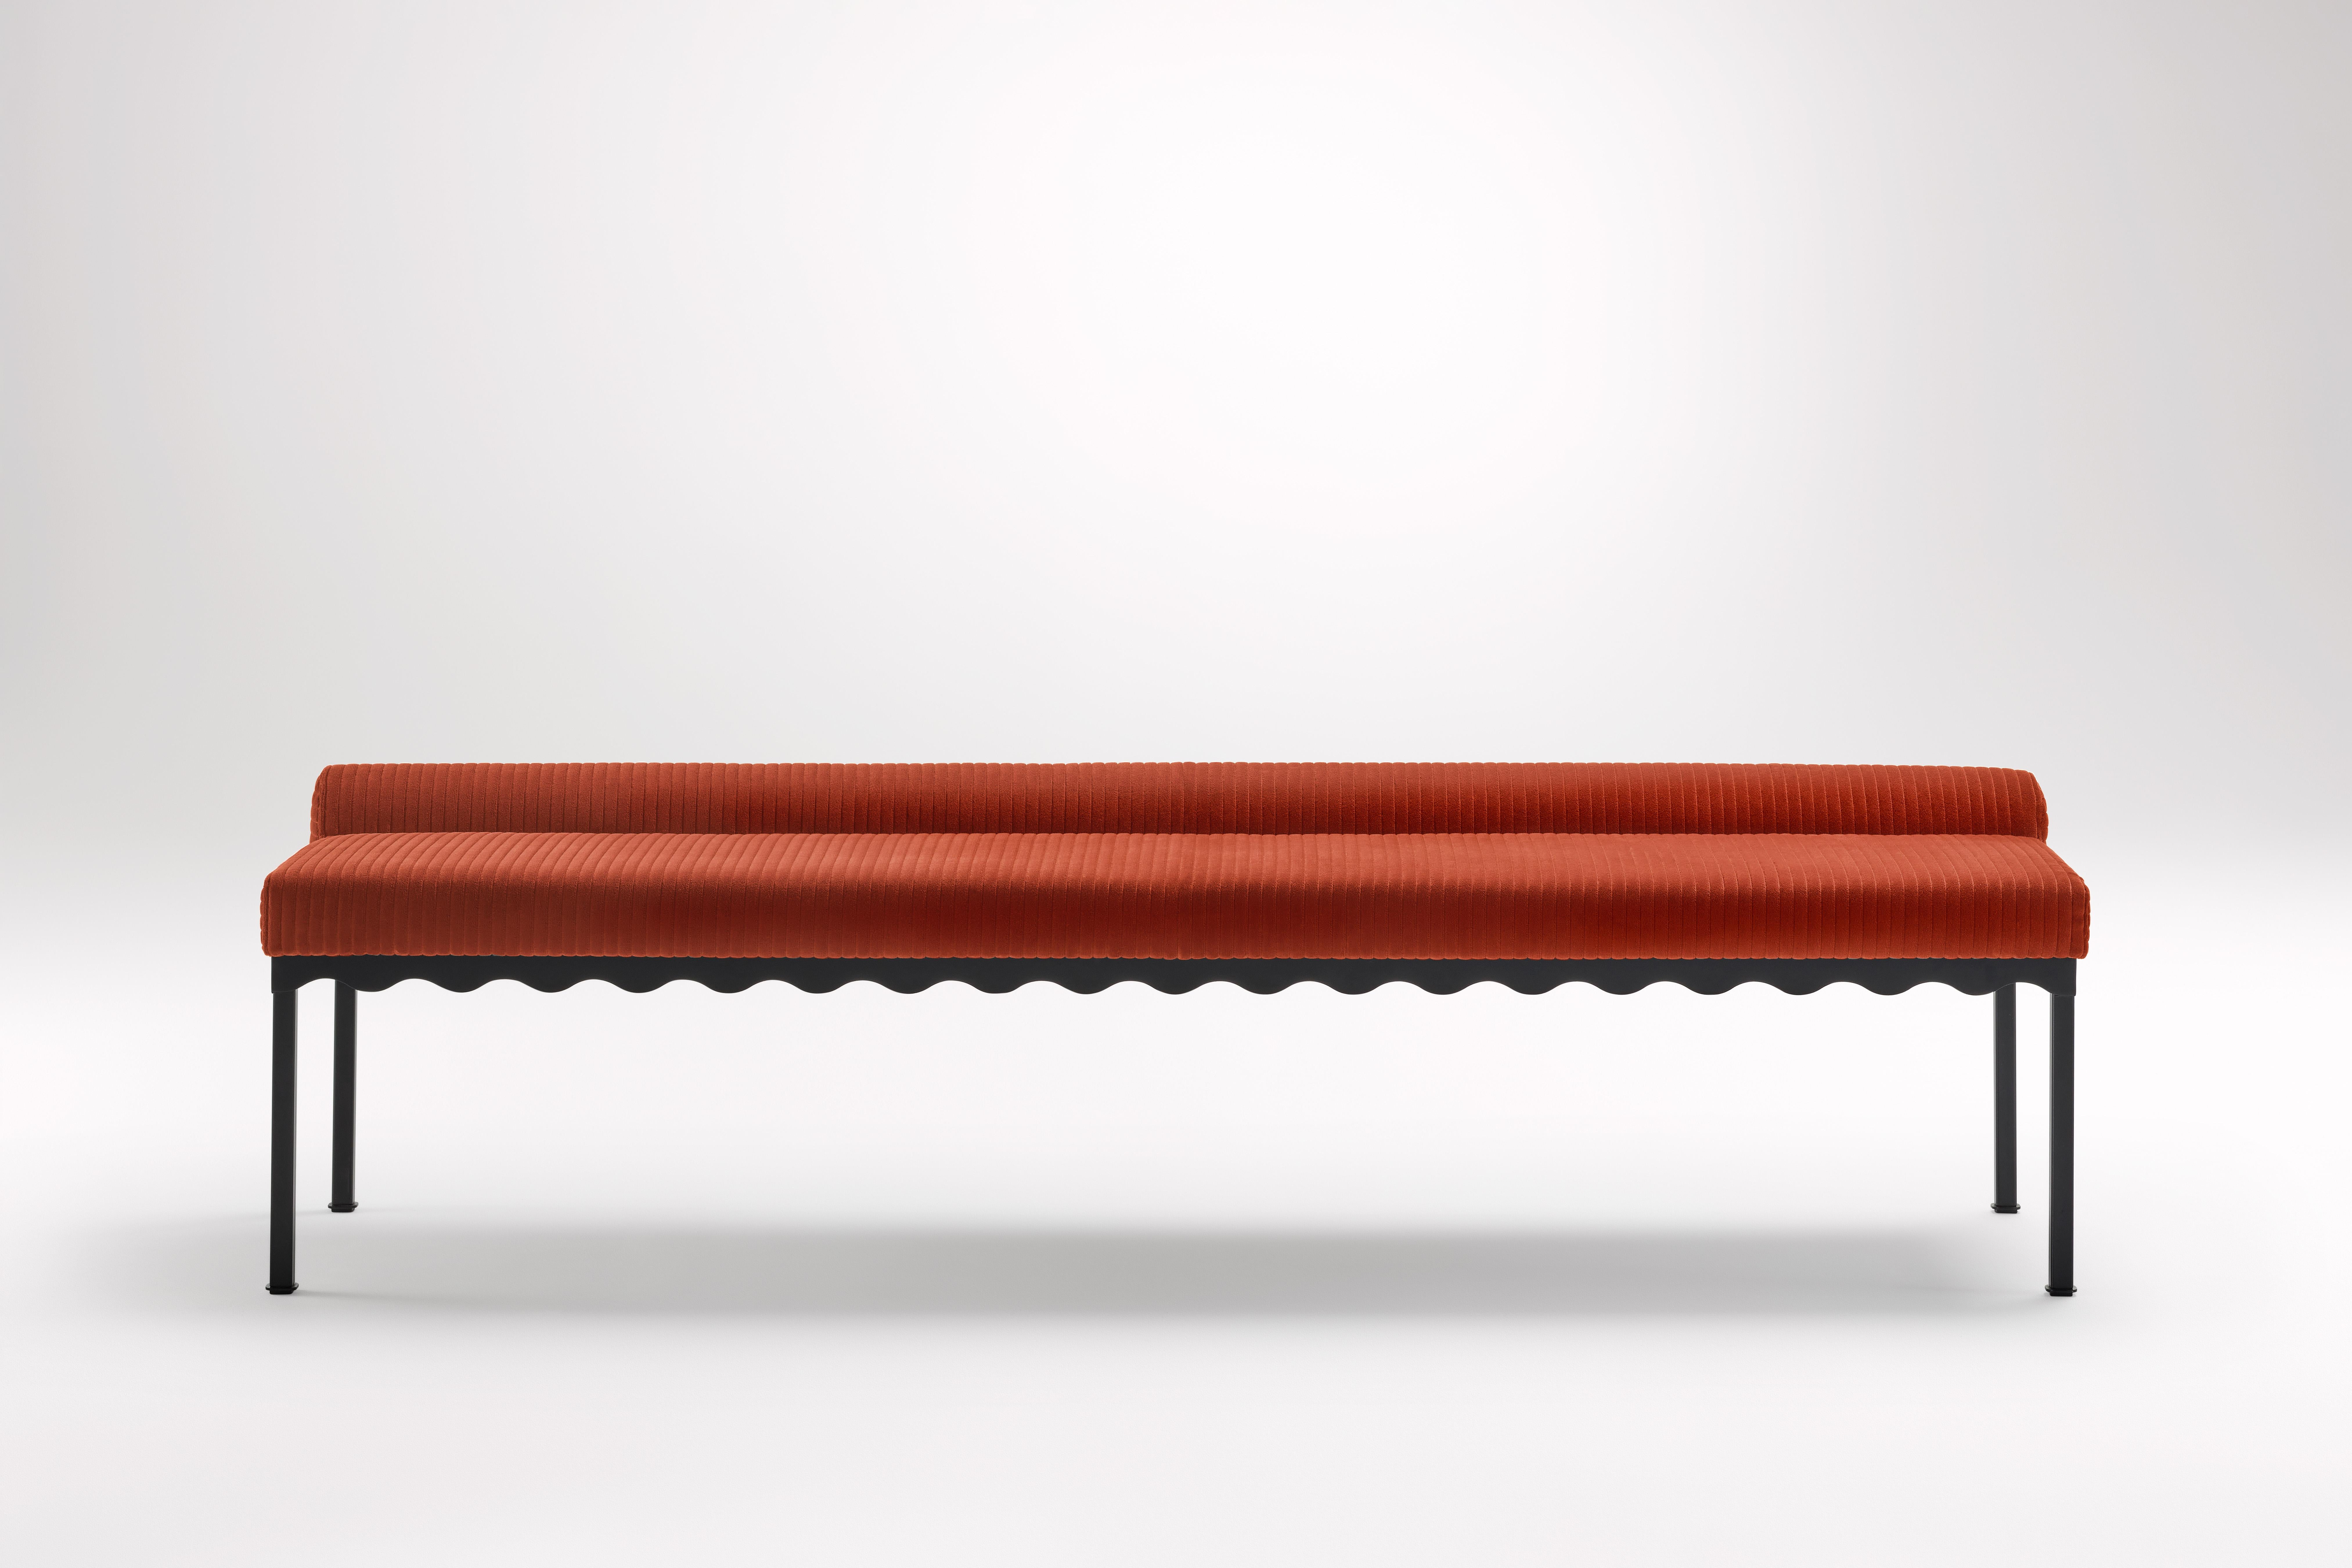 Sanguine Bellini 2040 Bank von Coco Flip
Abmessungen: T 204 x B 54 x H 52,5 cm
MATERIALIEN: Holz / gepolsterte Platten, pulverbeschichteter Stahlrahmen. 
Gewicht: 30 kg
Rahmenausführungen: Textura Schwarz.

Coco Flip ist ein Studio für Möbel- und